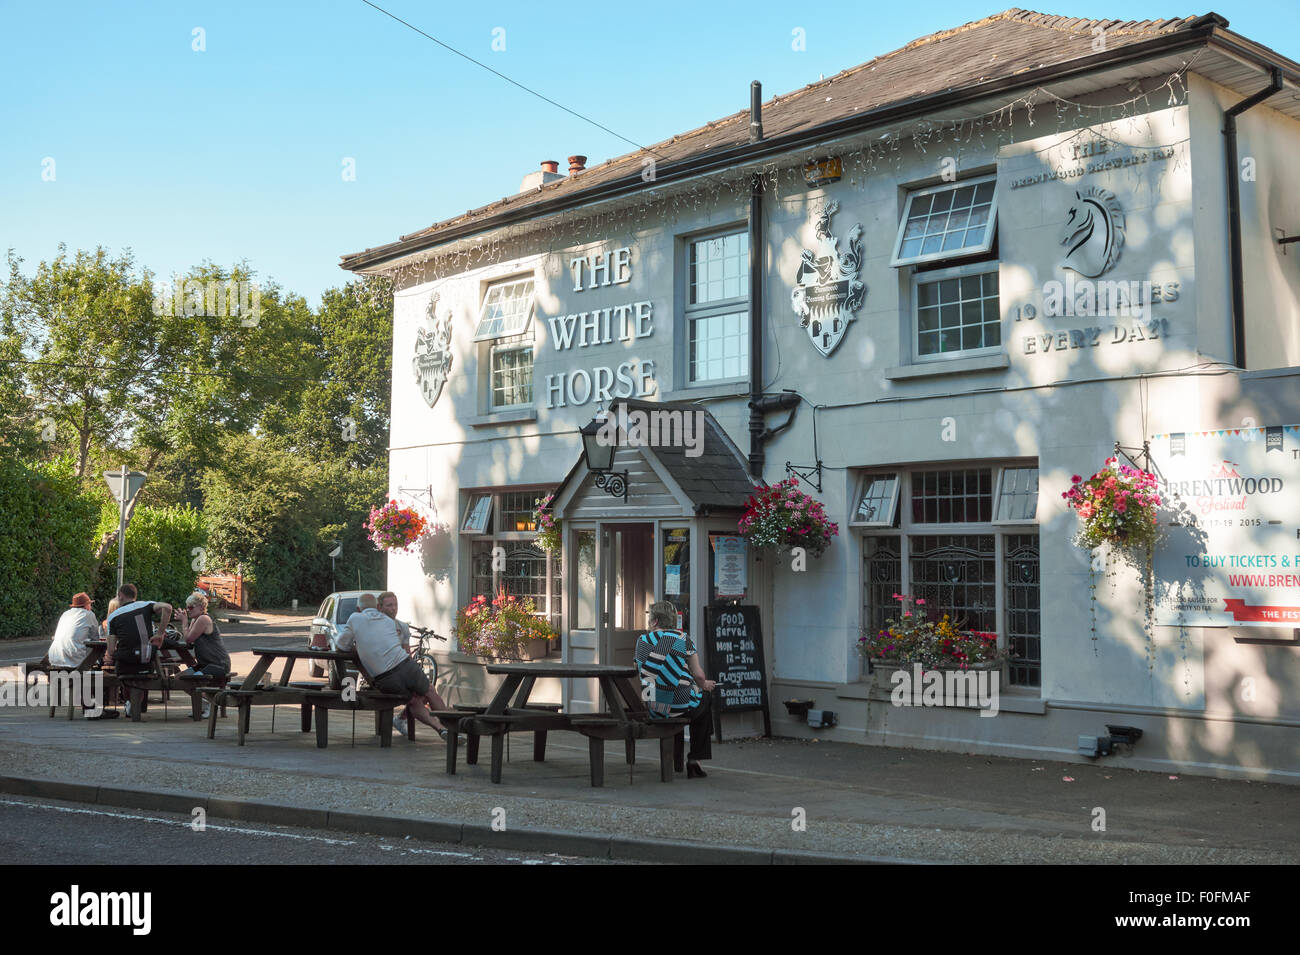 The White Horse pub, Brentwood, Essex, England United Kingdom UK Stock Photo